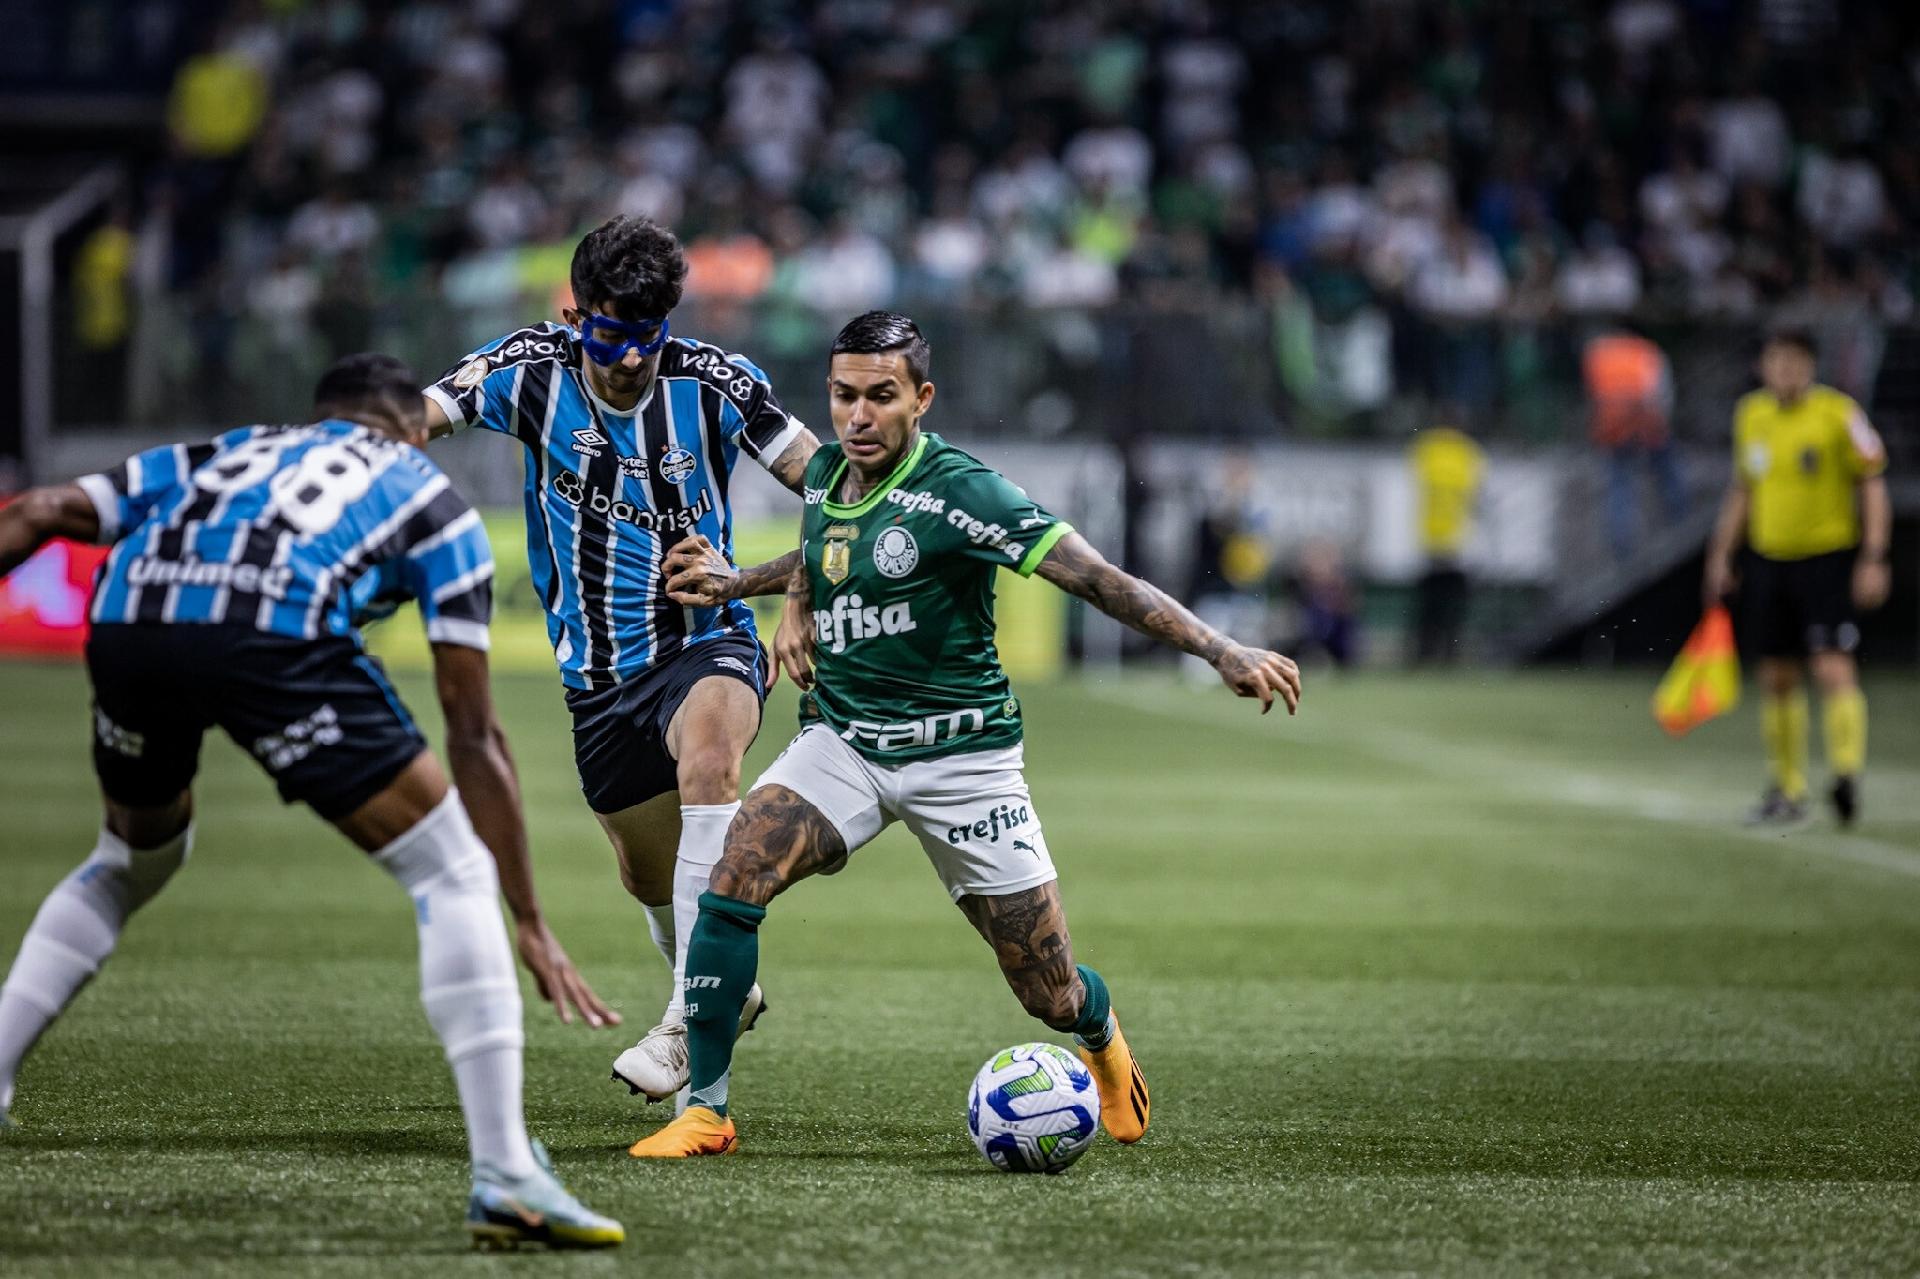 Palmeiras vs Tombense: An Exciting Clash of Football Giants